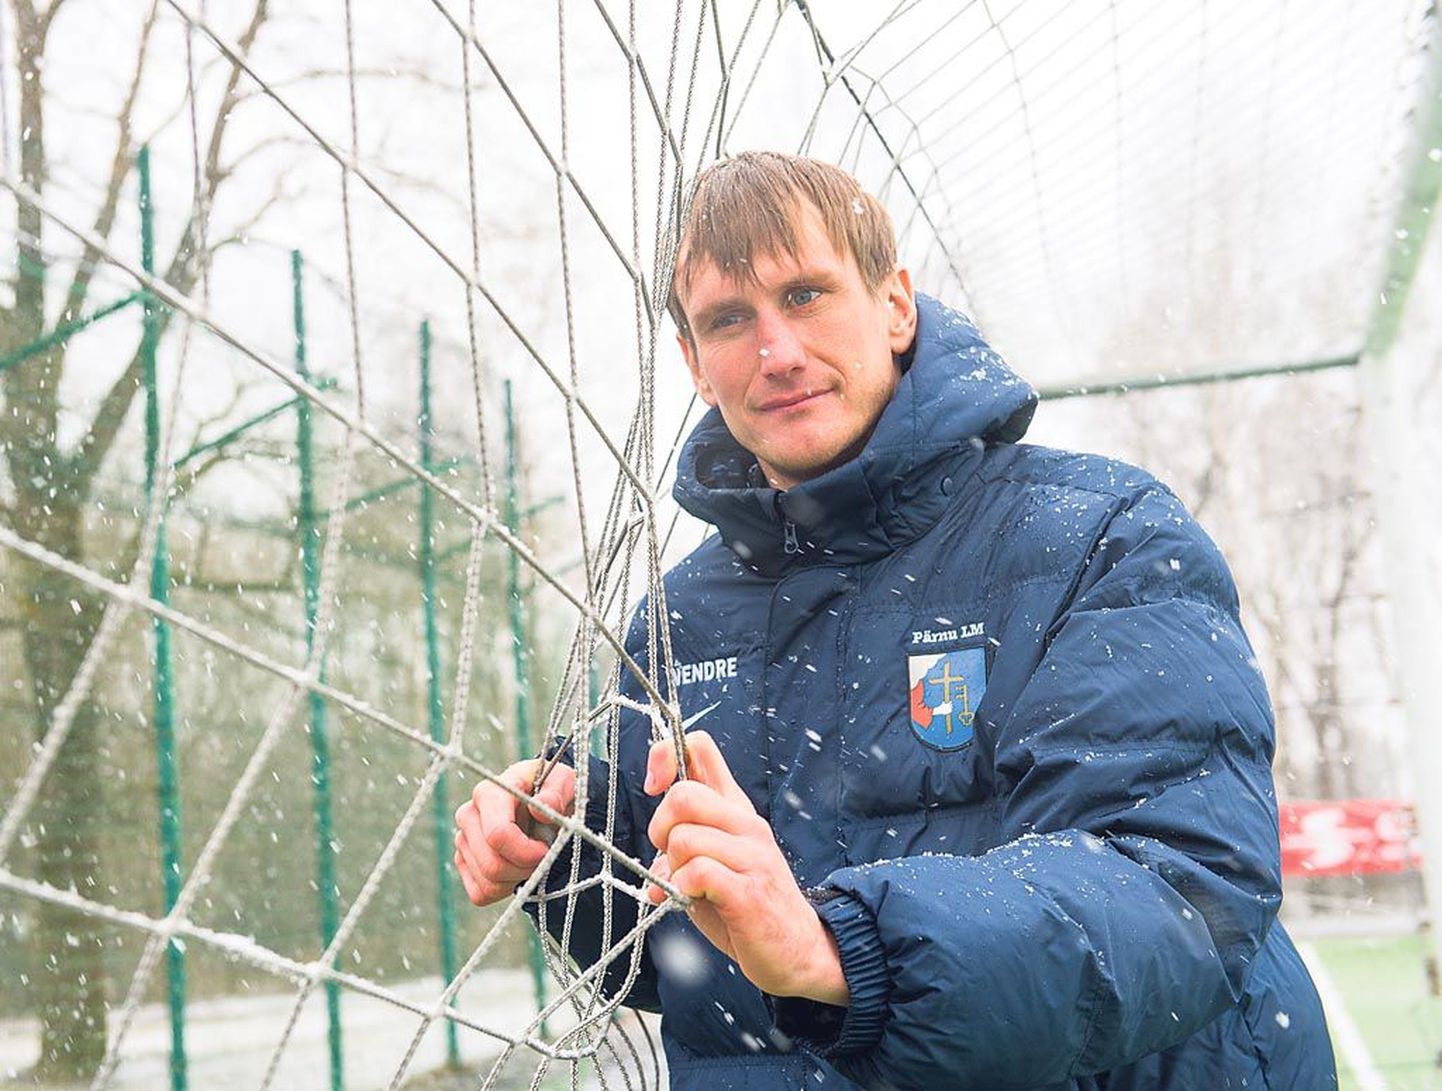 Raio Piiroja paneb küll Eesti ja Islandi mängus oma profijalgpalluri karjäärile punkti, aga jääb Pärnu linnameeskonna pealikuna endiselt jalgpalliga seotuks.